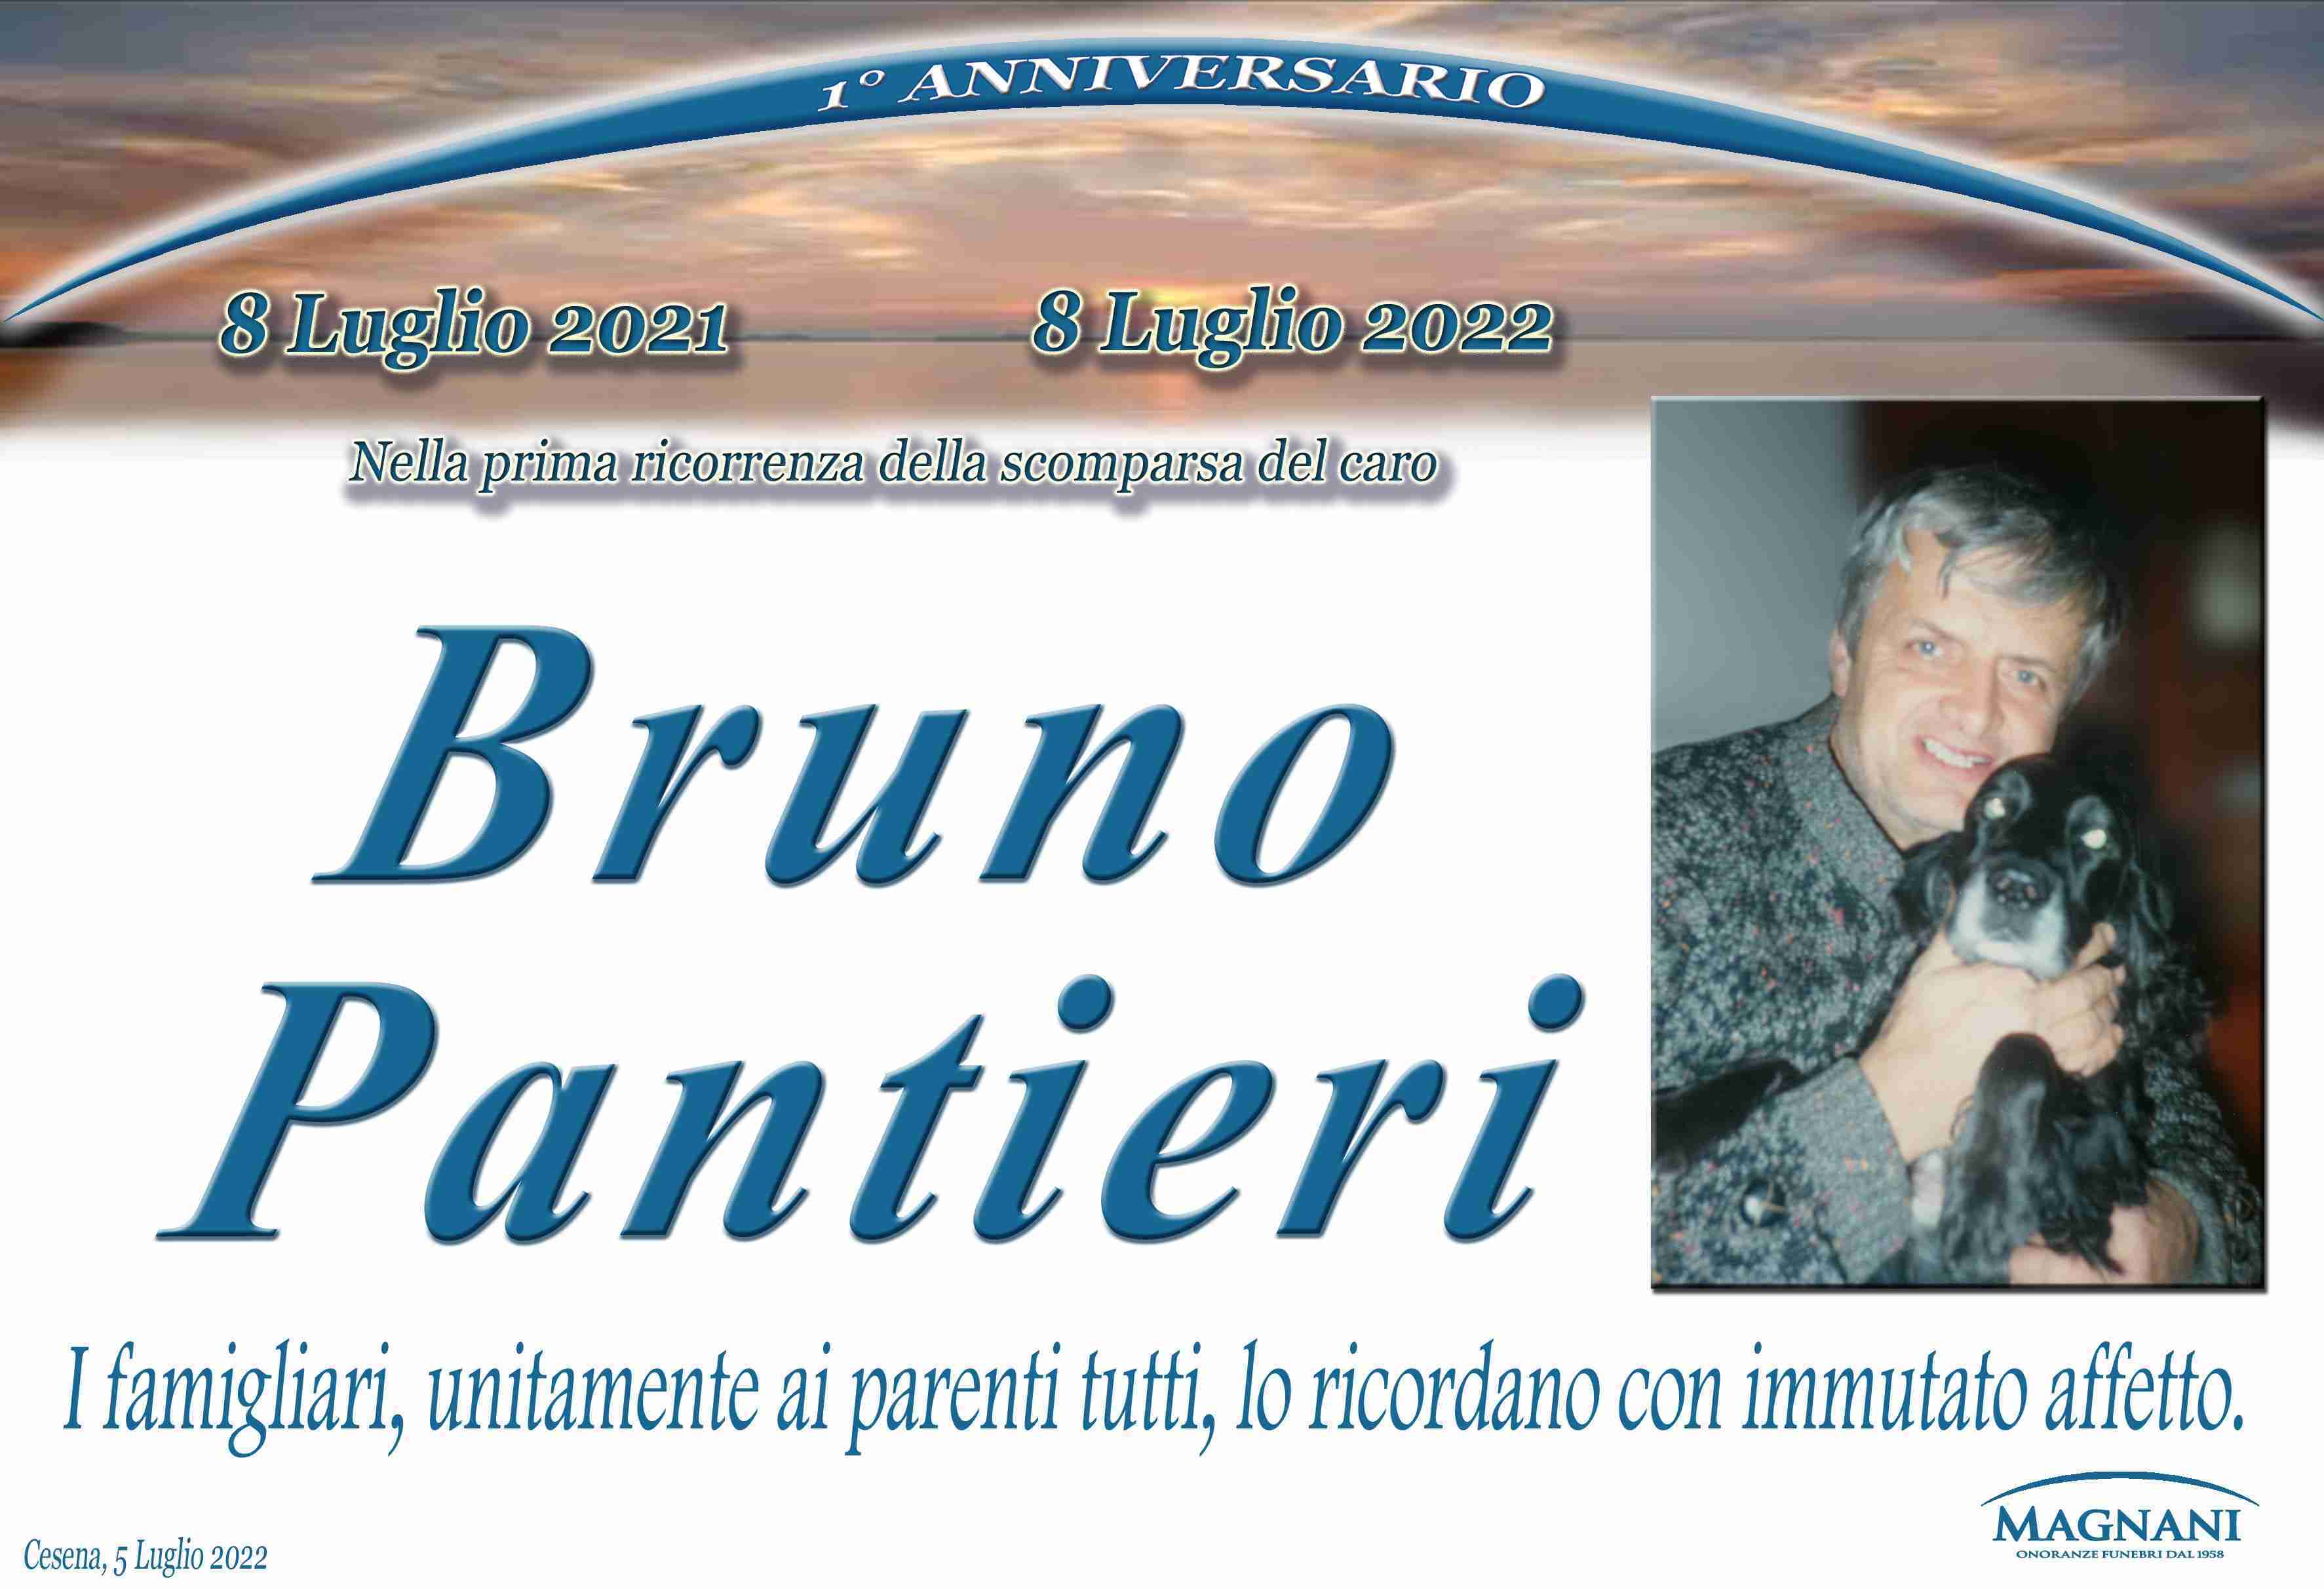 Bruno Pantieri